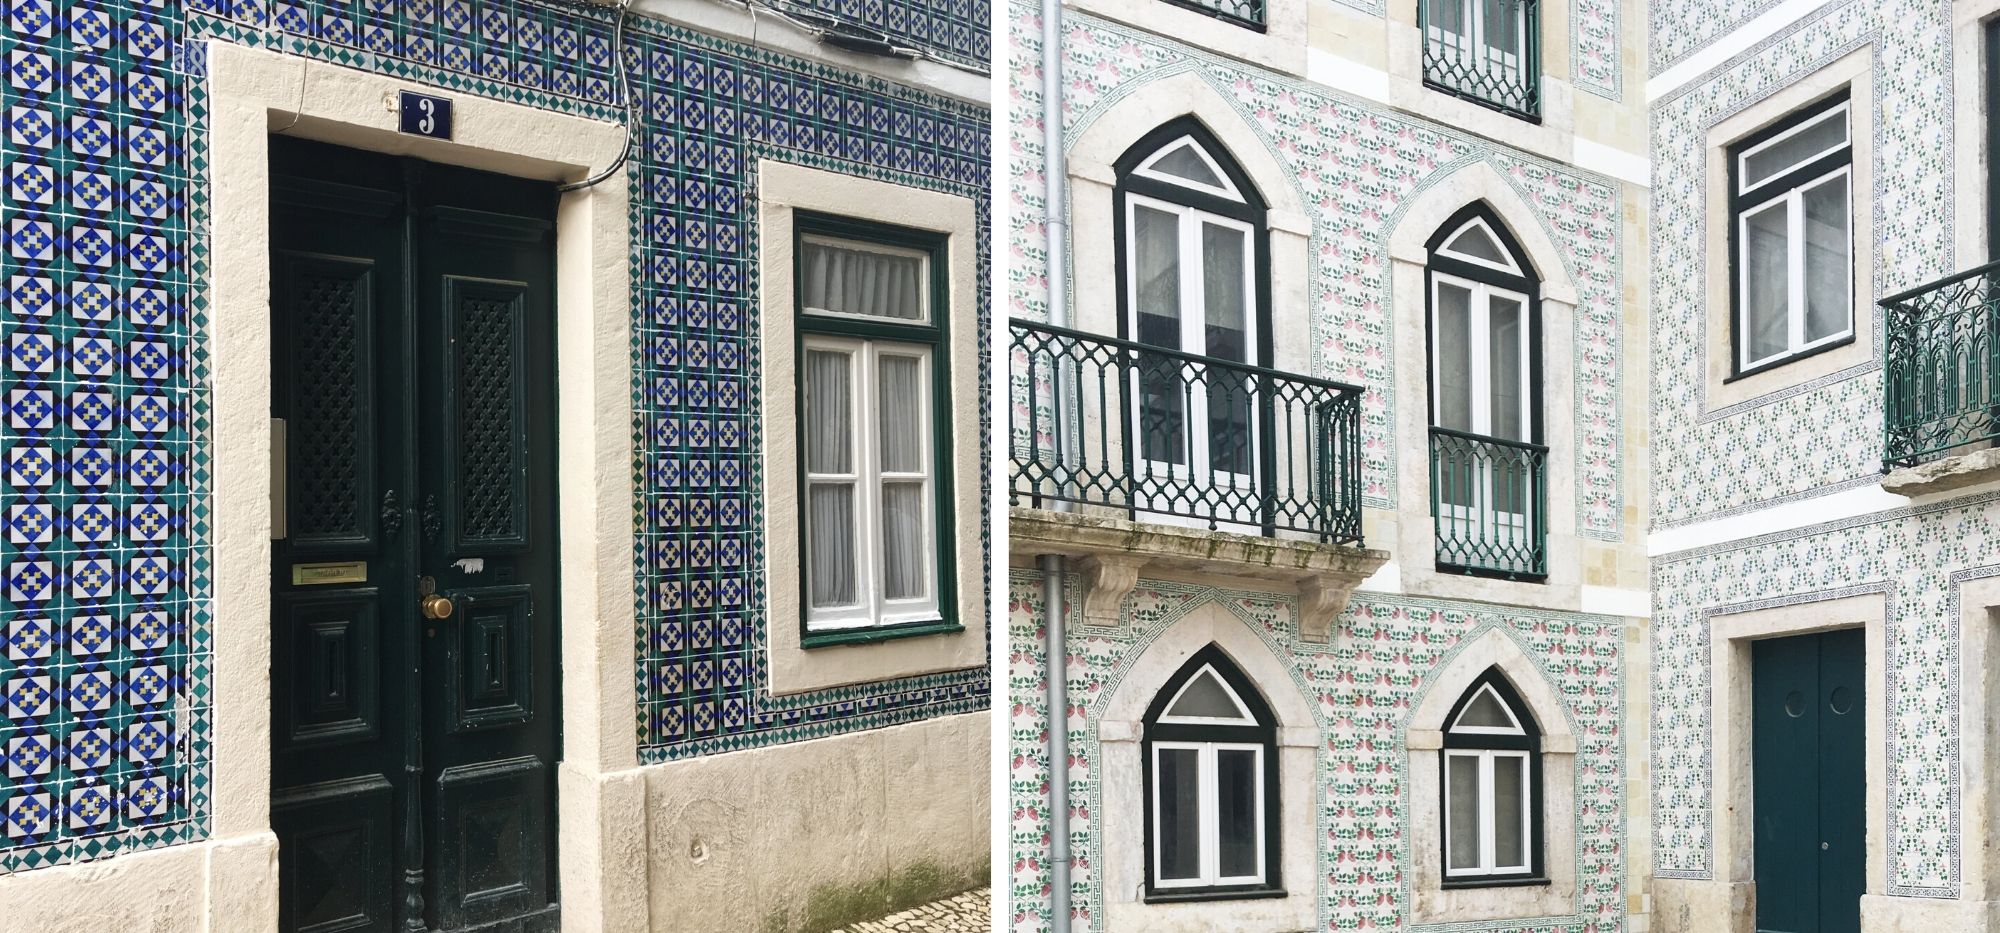 Lizbona - azulejos